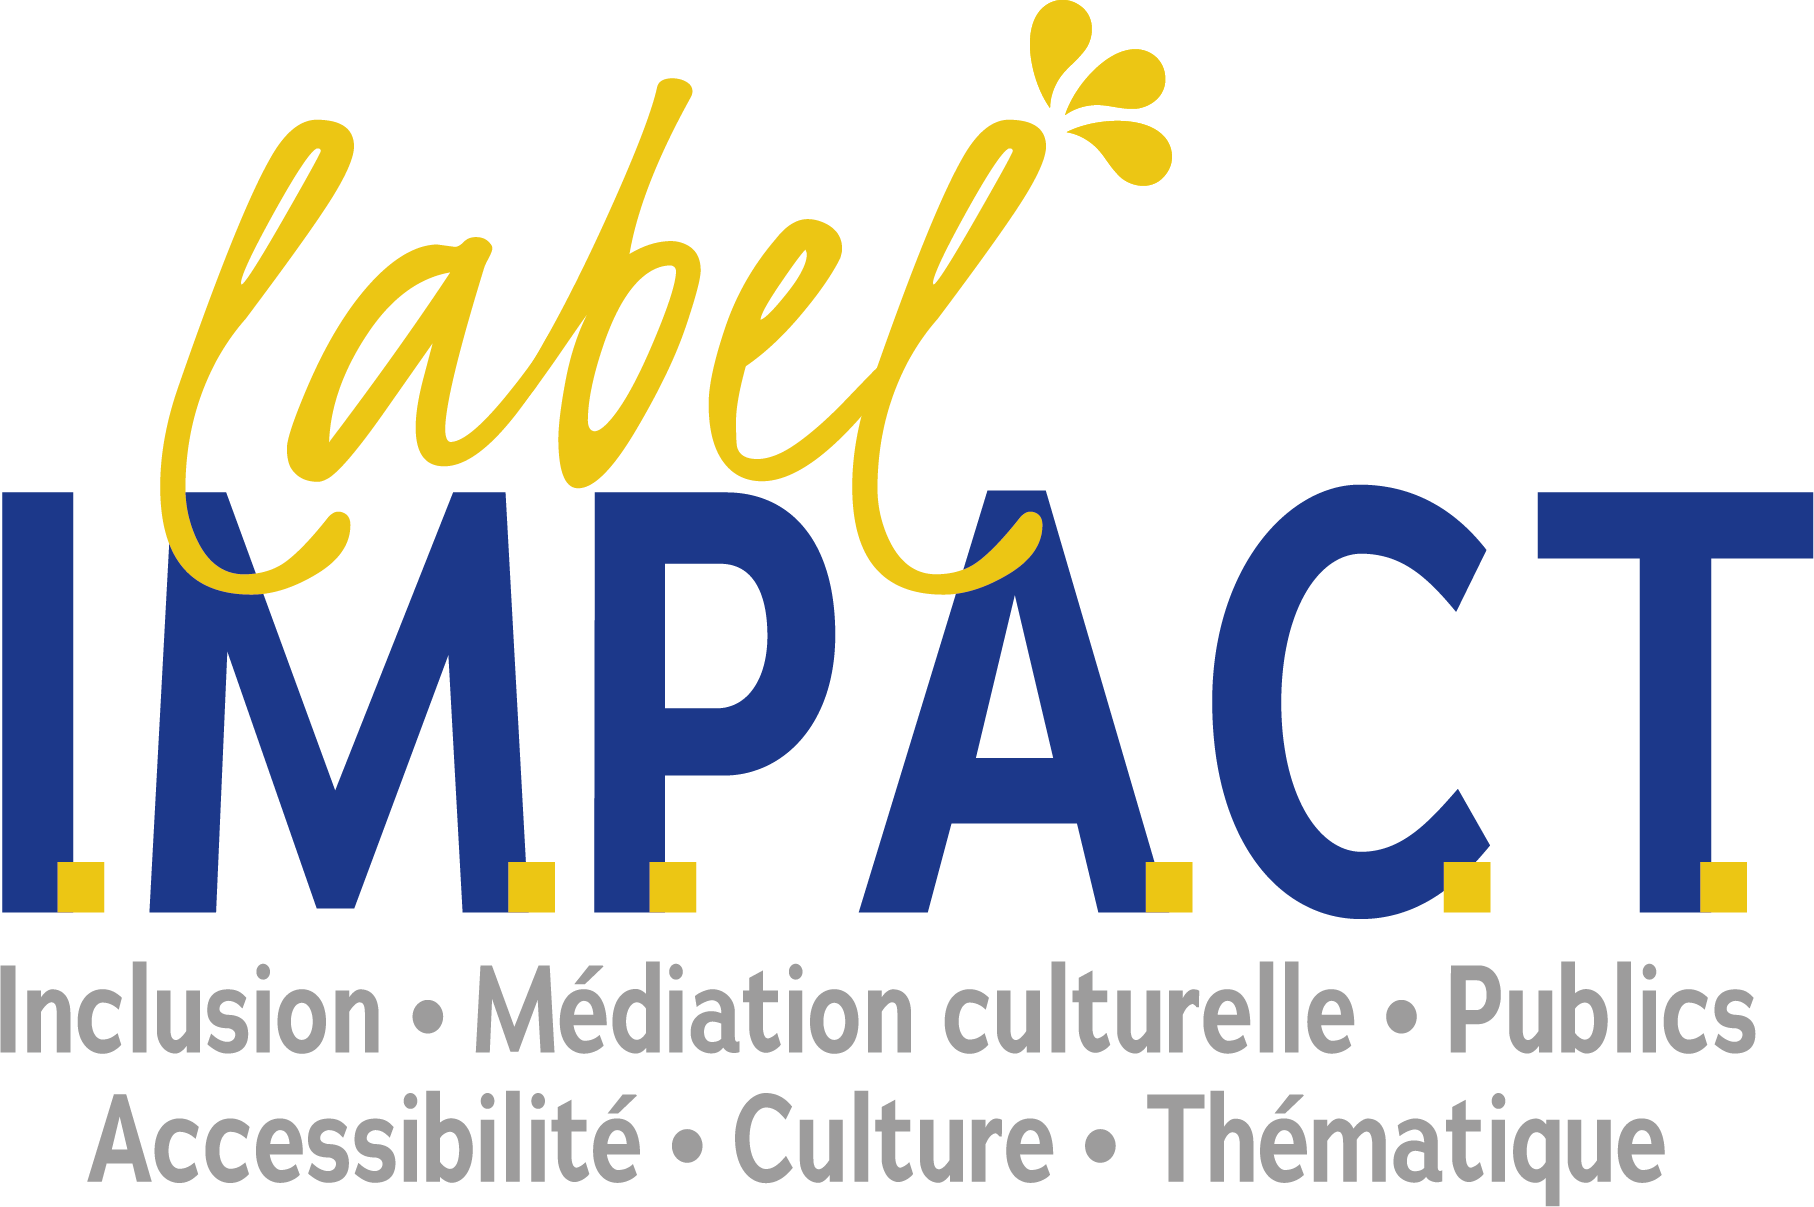 Label Impact - Inclusion, médiation culturelle, publics, accessibilité, culture, thématique